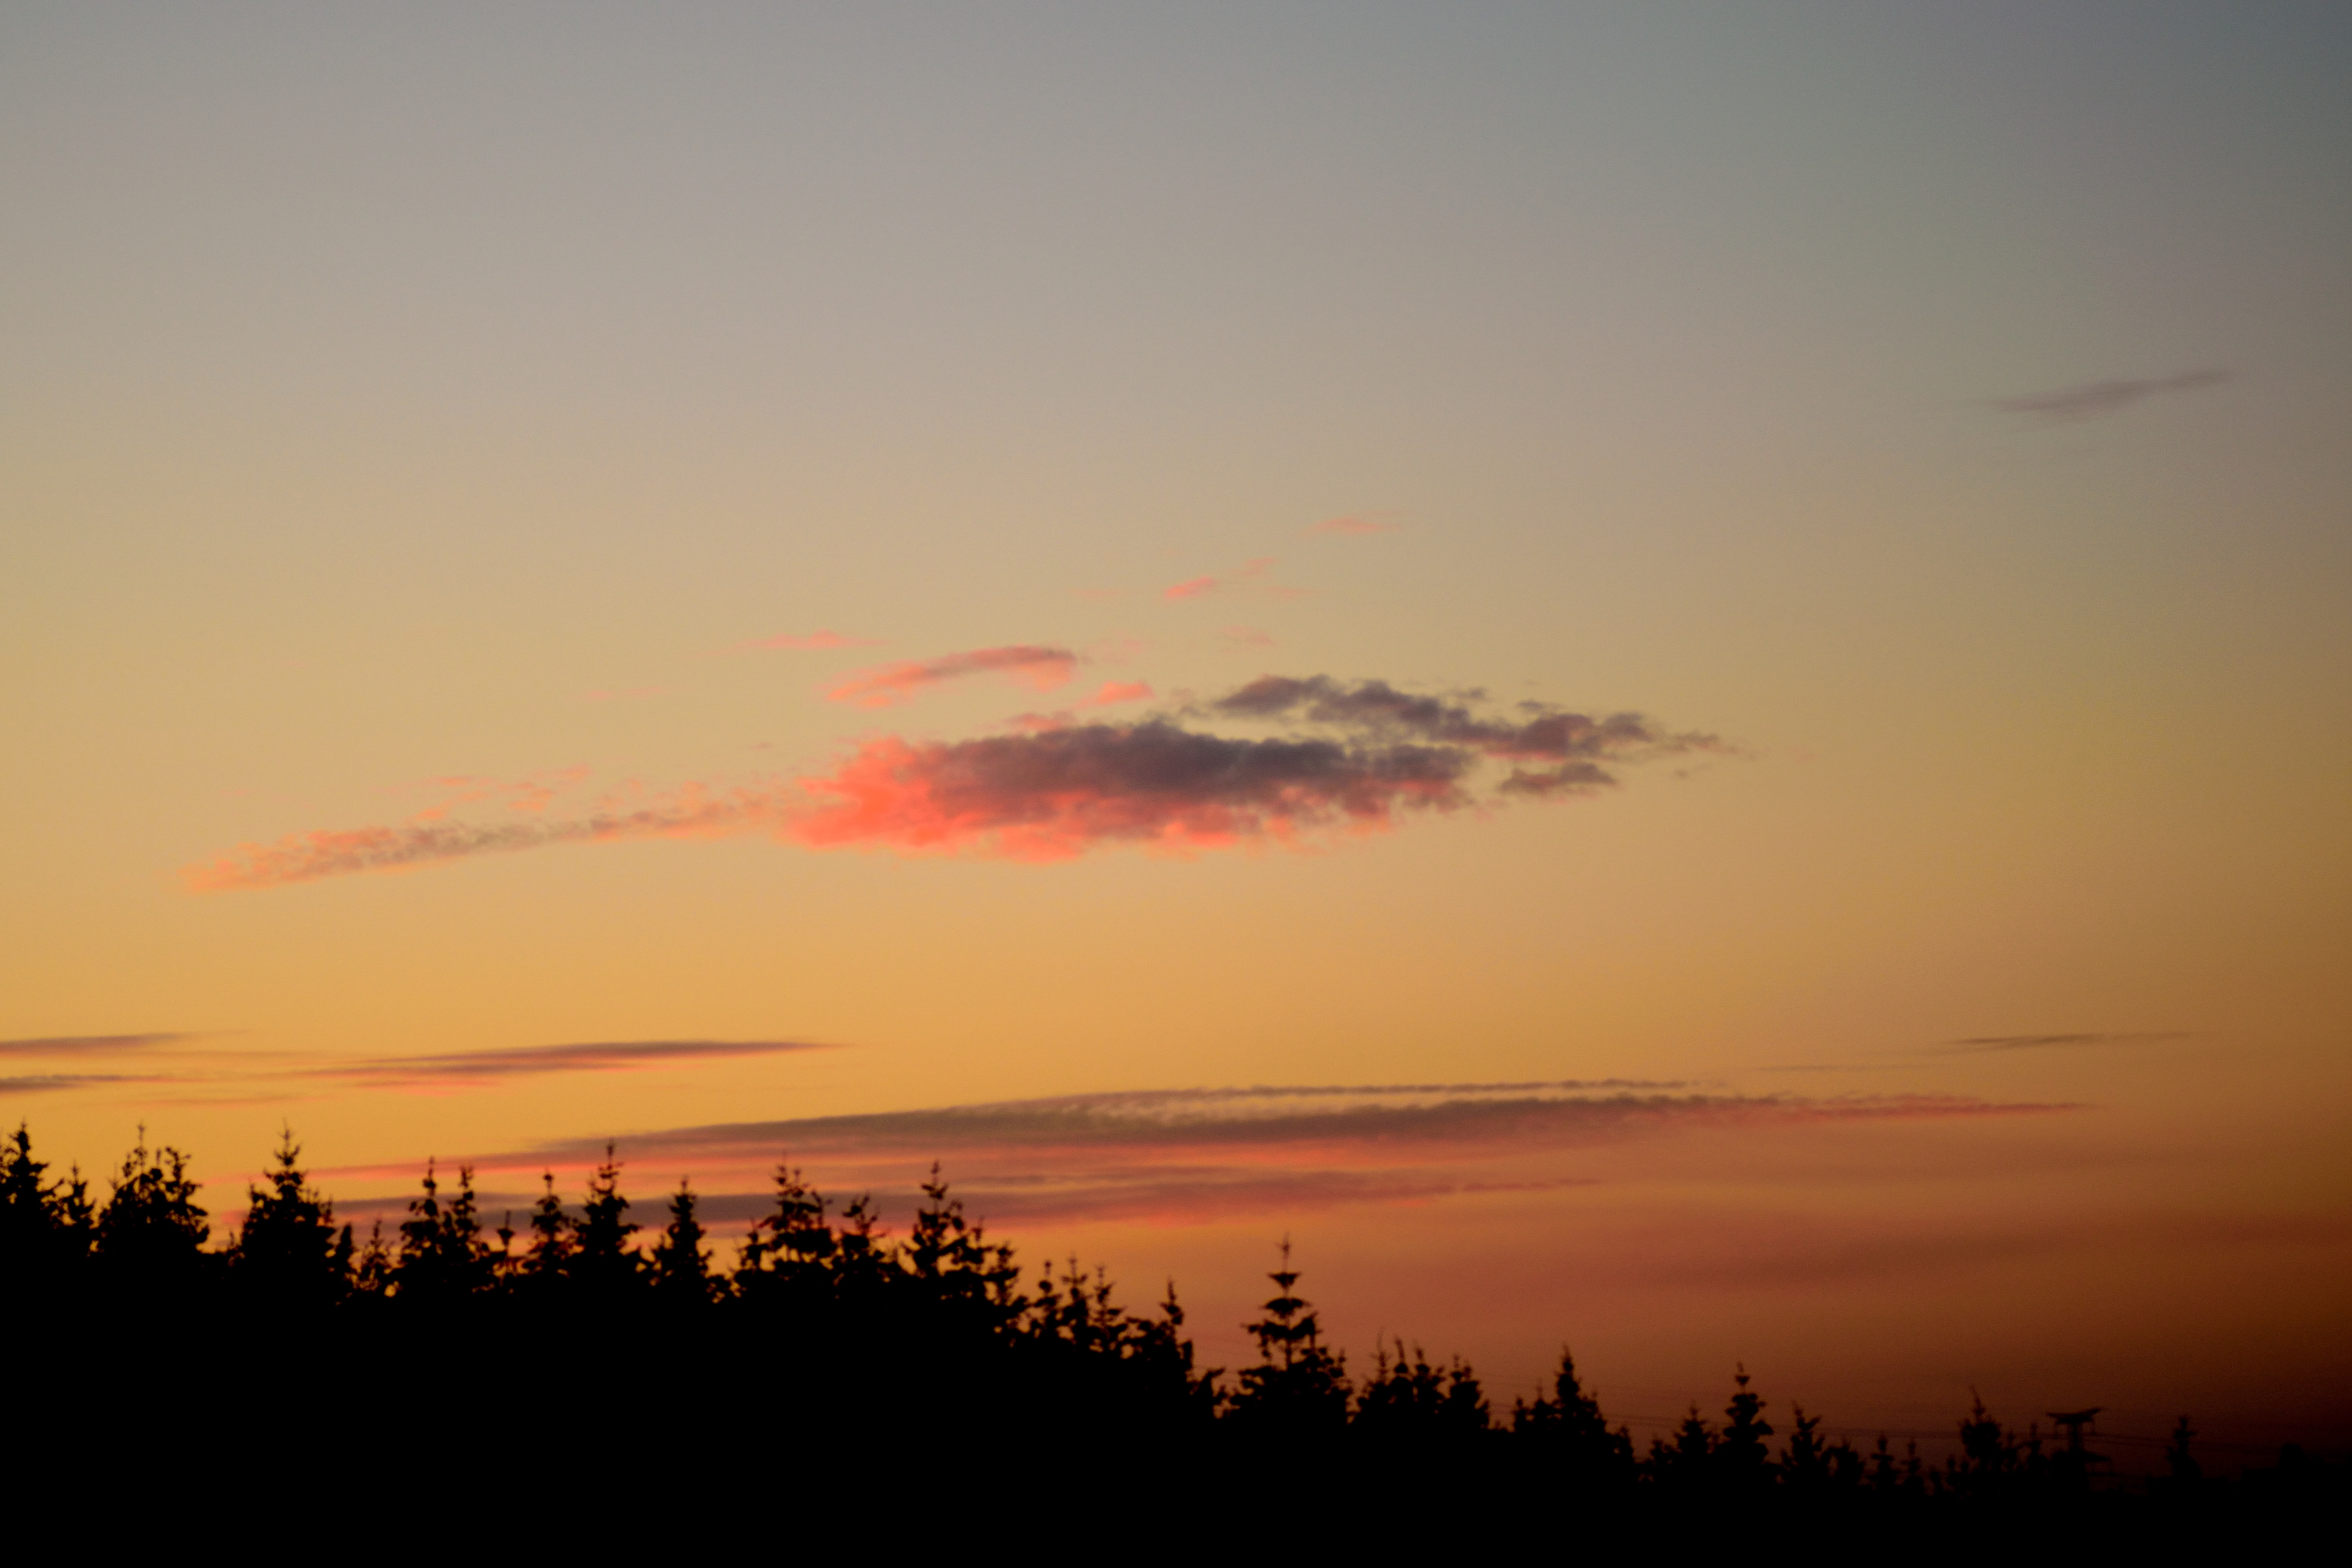 dusk, twilight, trees, sunset, dark, outlines HD for desktop 1080p